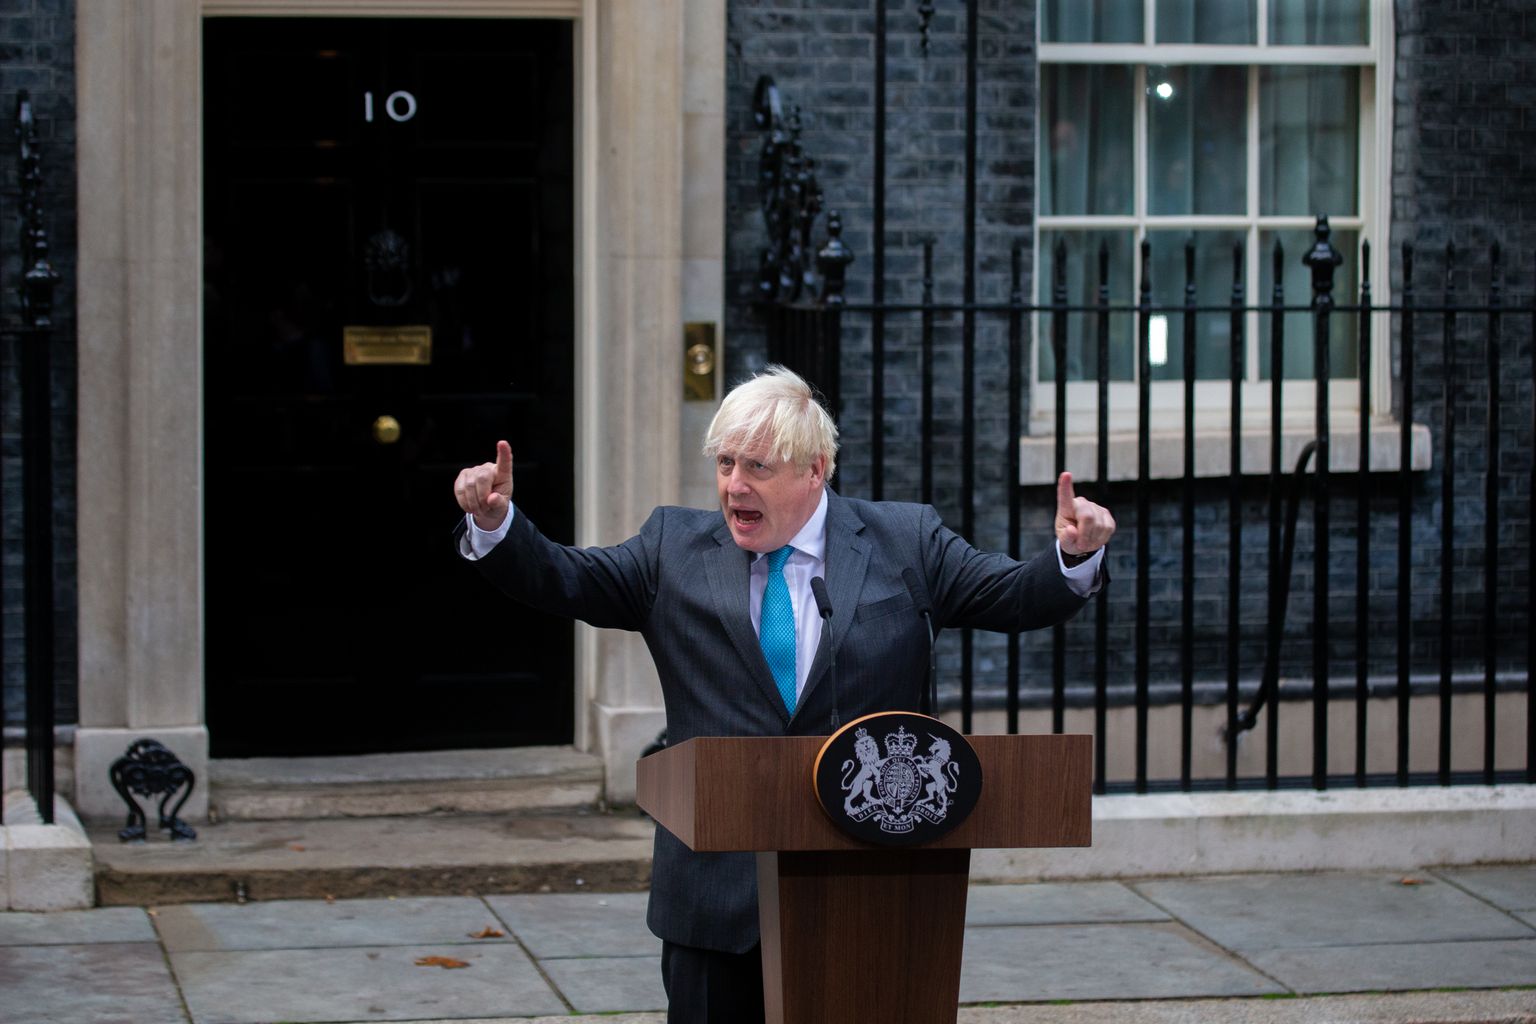 Briti lahkunud peaminister Boris Johnson pidas 6. septembril Londonis peaministri residentsi Downing Street 10 ees viimase kõne